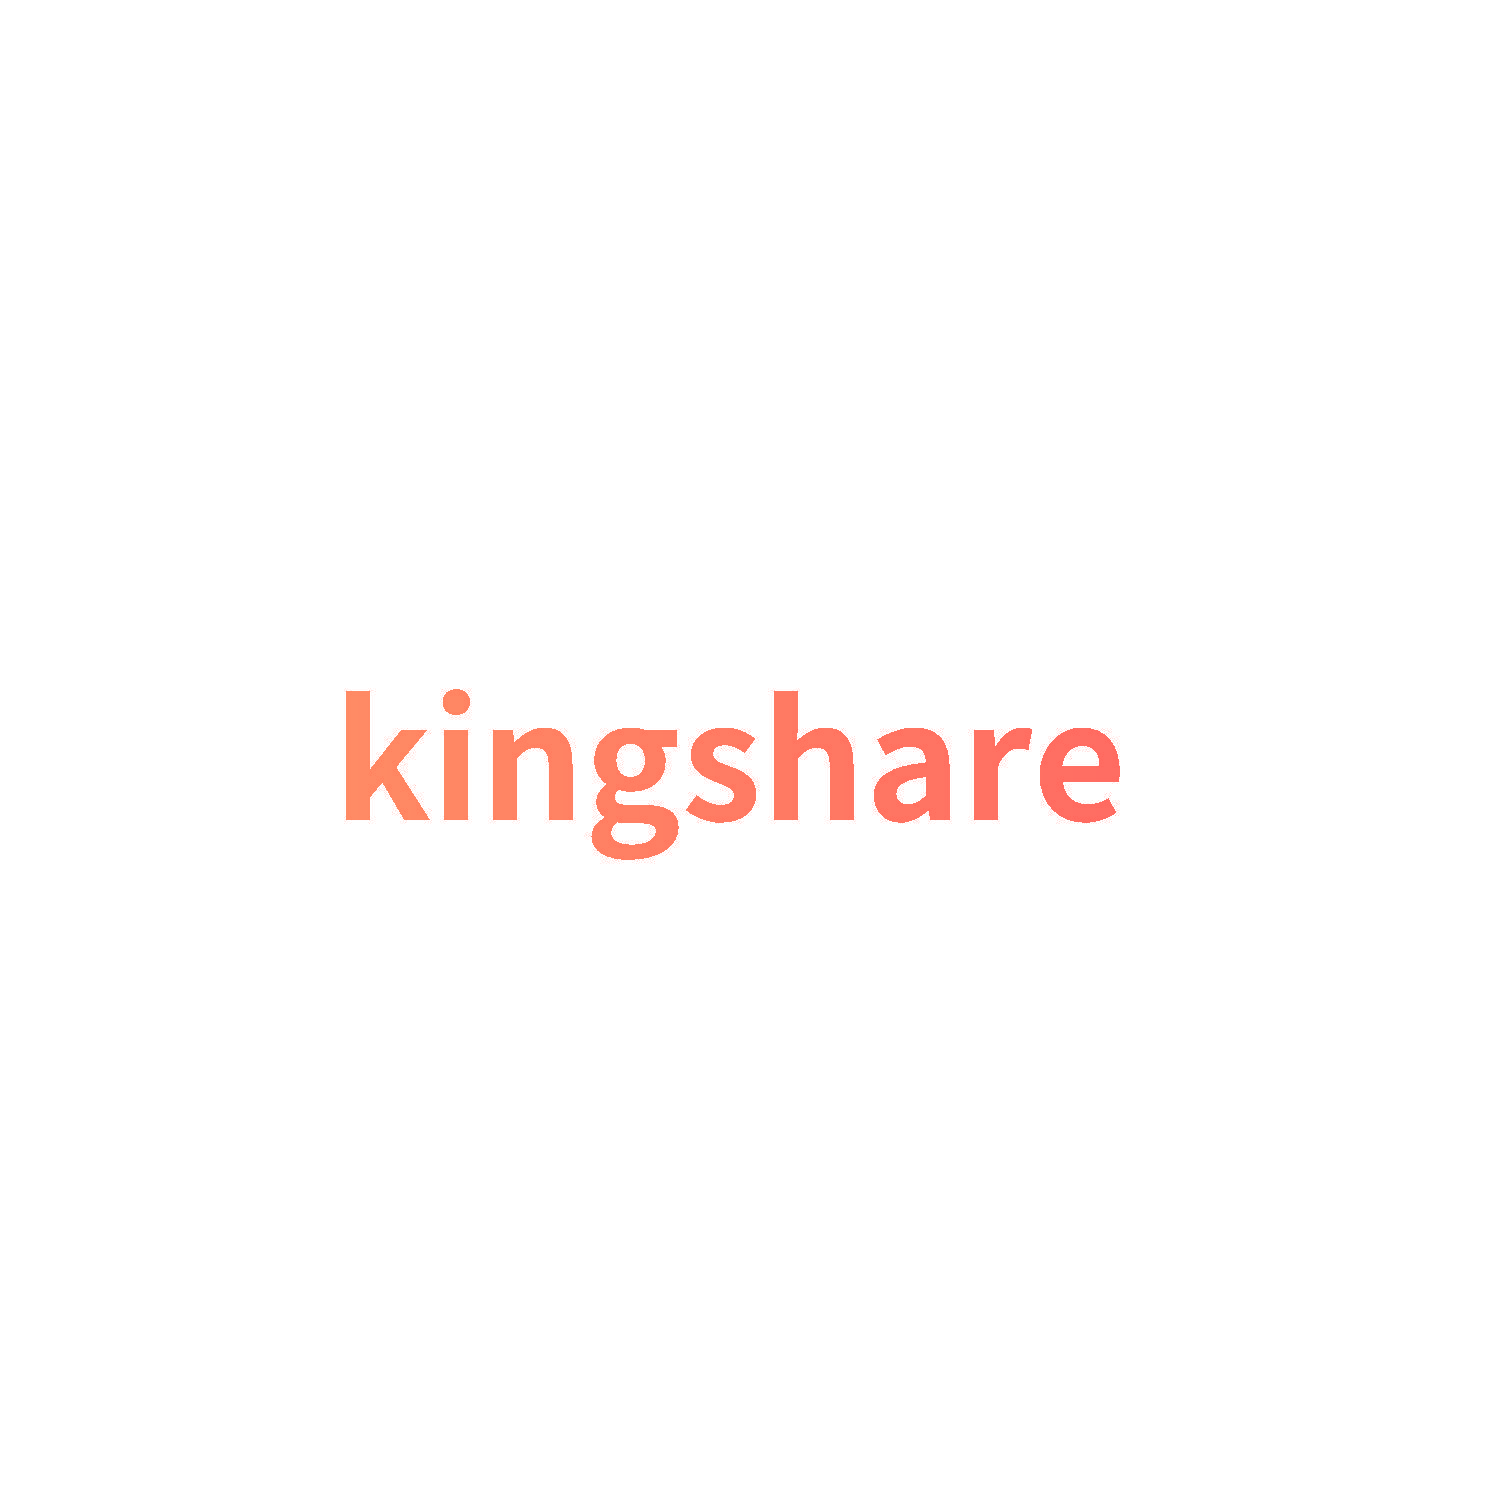 kingshare